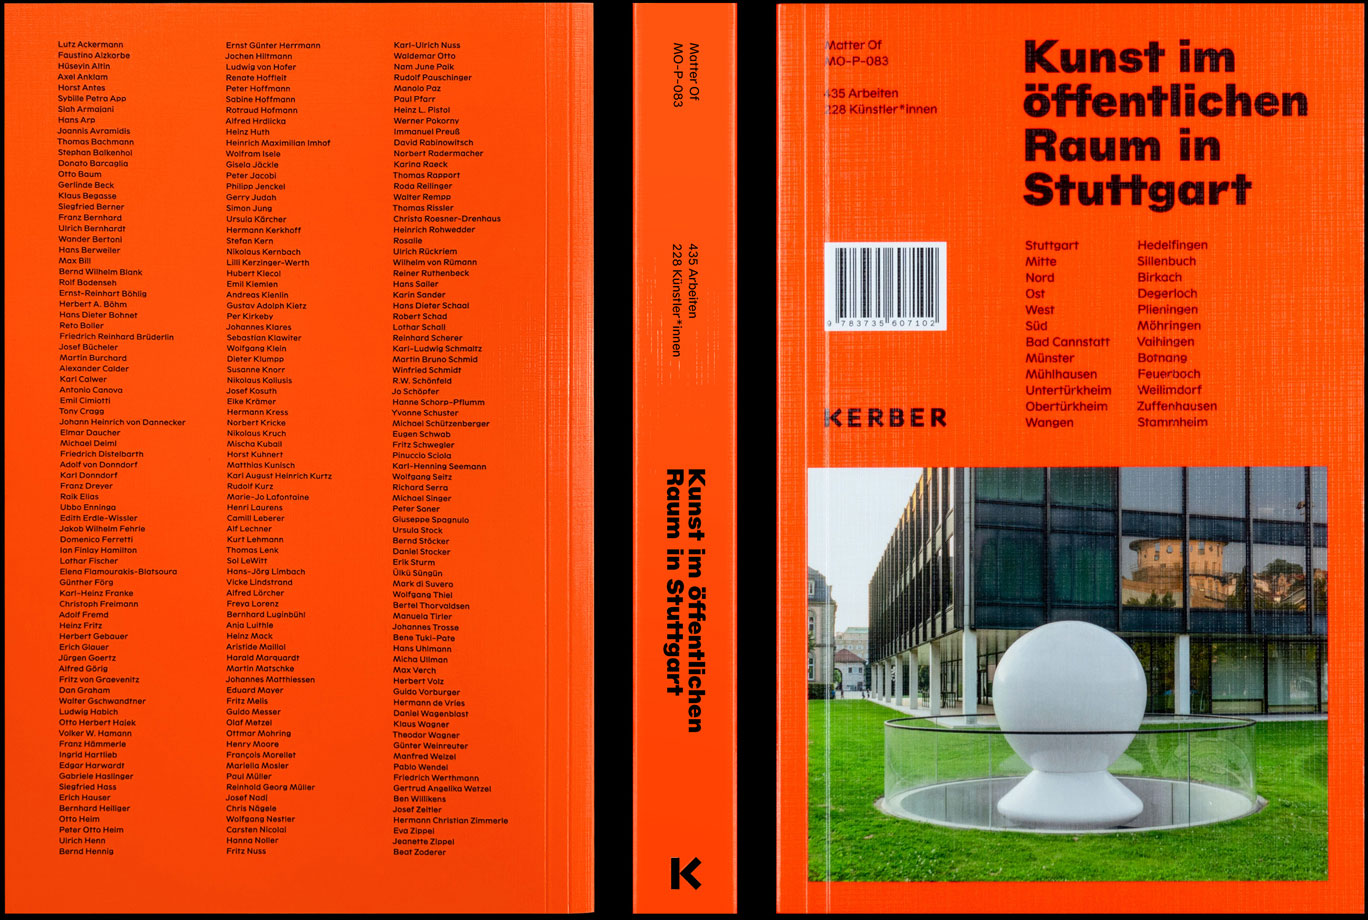 Matter Of: Kunst im öffentlichen Raum in Stuttgart